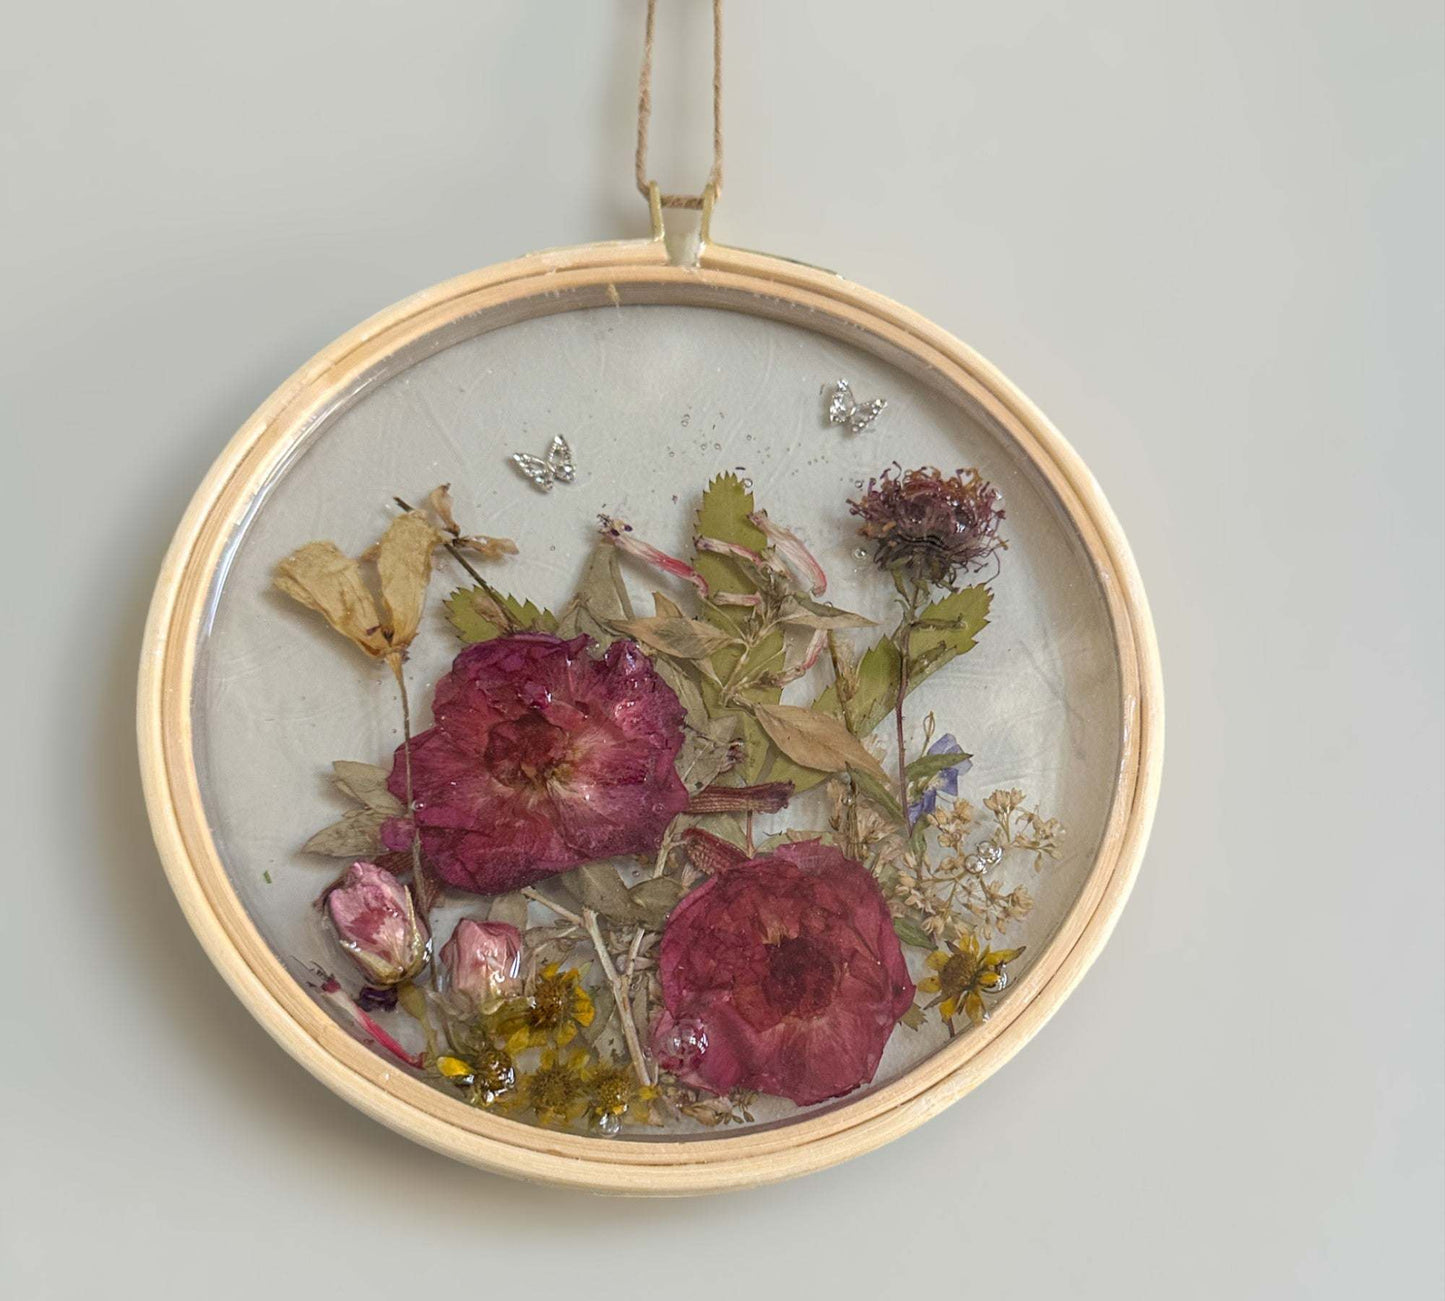 Suncatcher - Enchanted Rose Resin Garden Handmade with Wild Roses